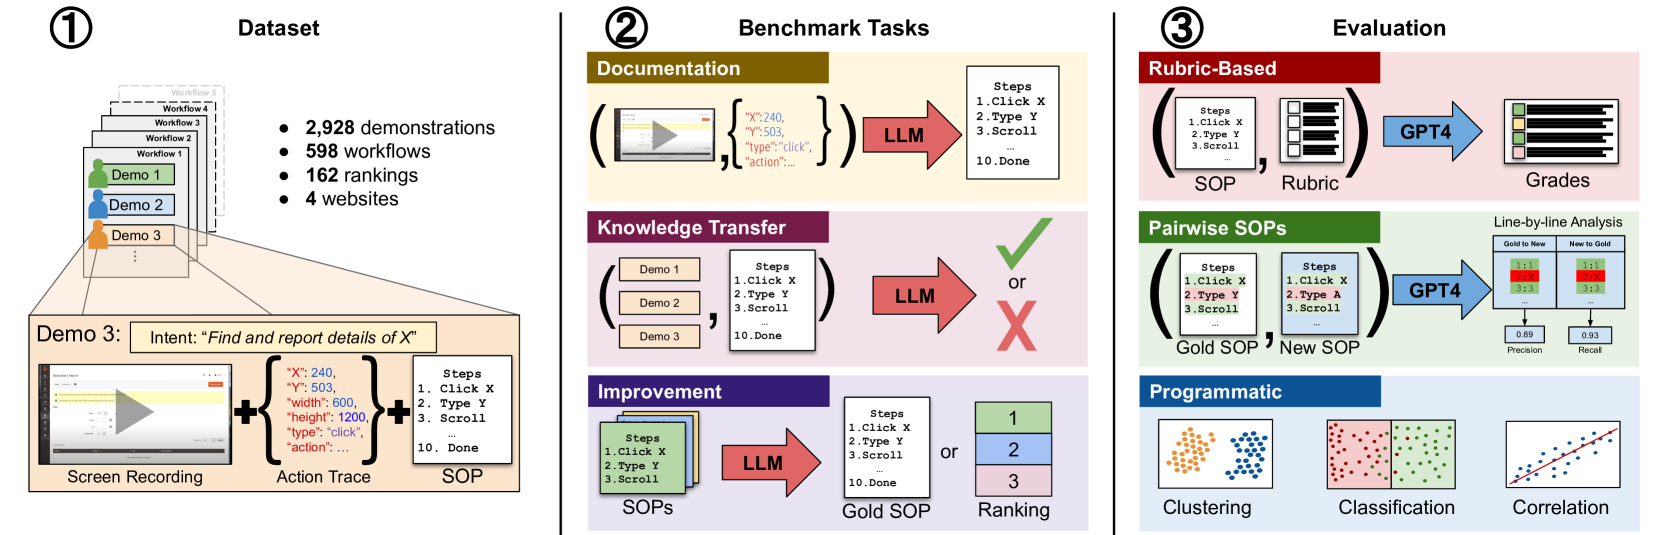 Do Multimodal Foundation Models Understand Enterprise Workflows? A Benchmark for Business Process Management Tasks